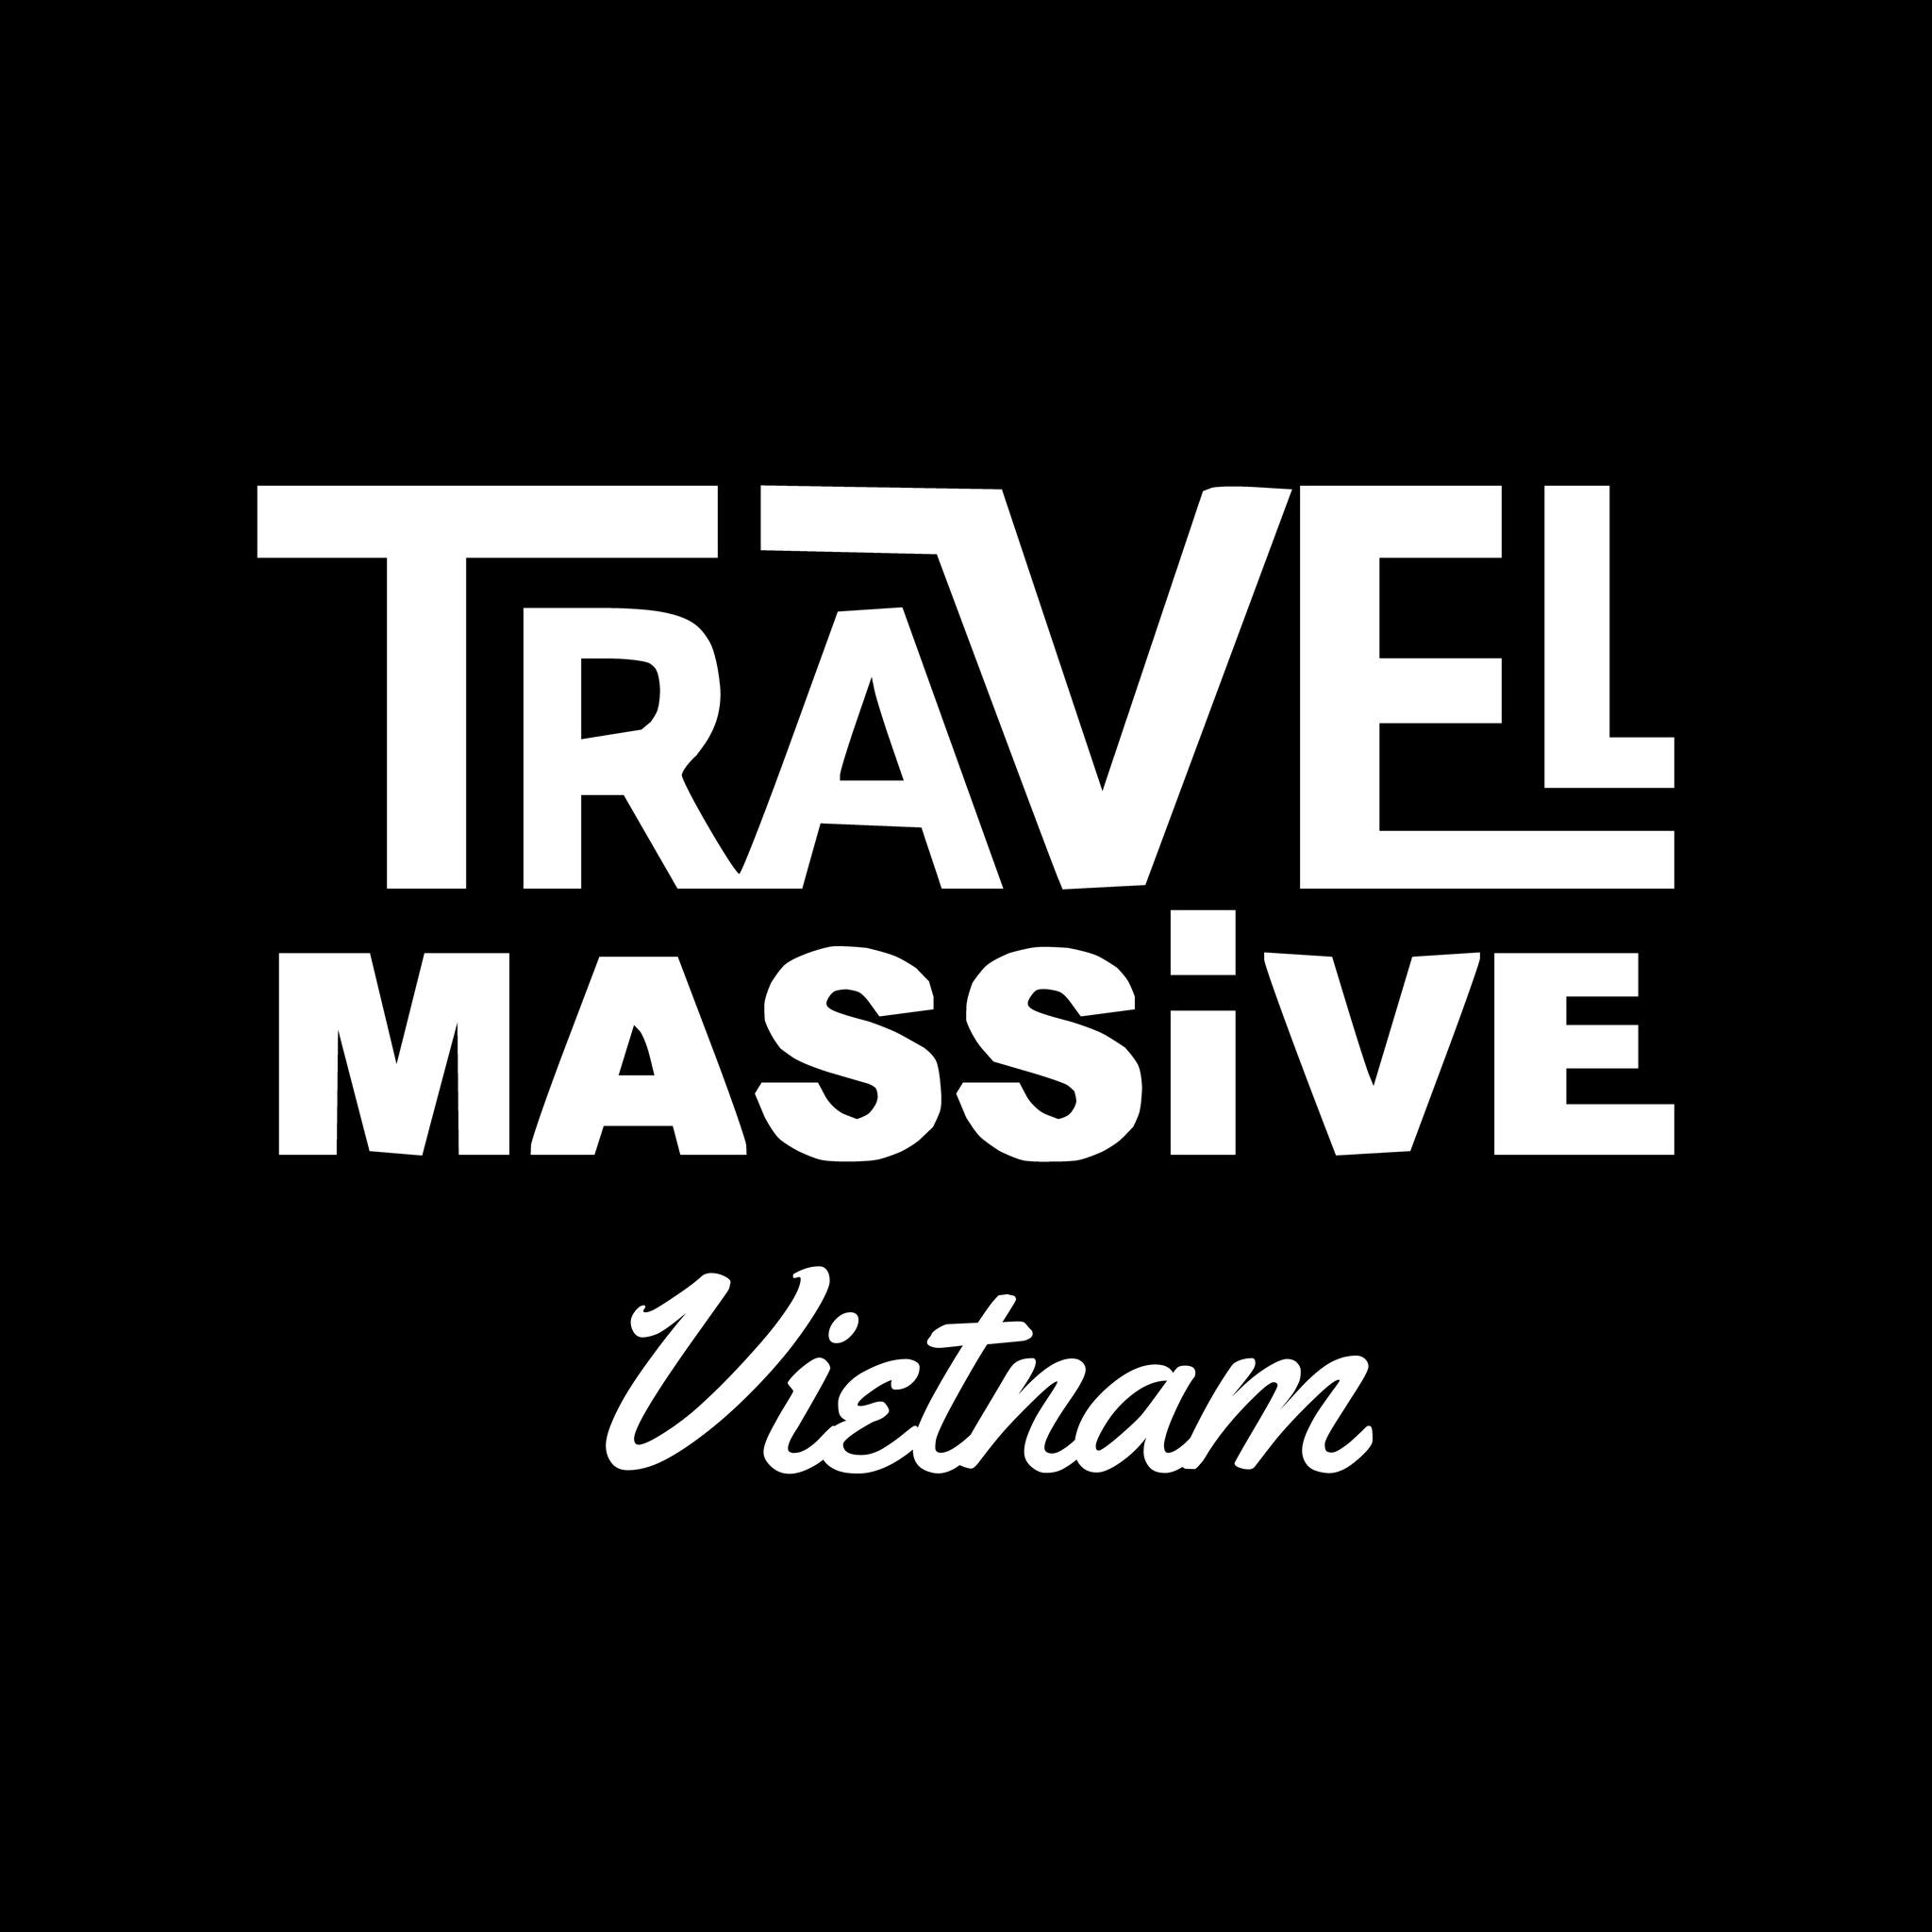 Travel Massive Vietnam